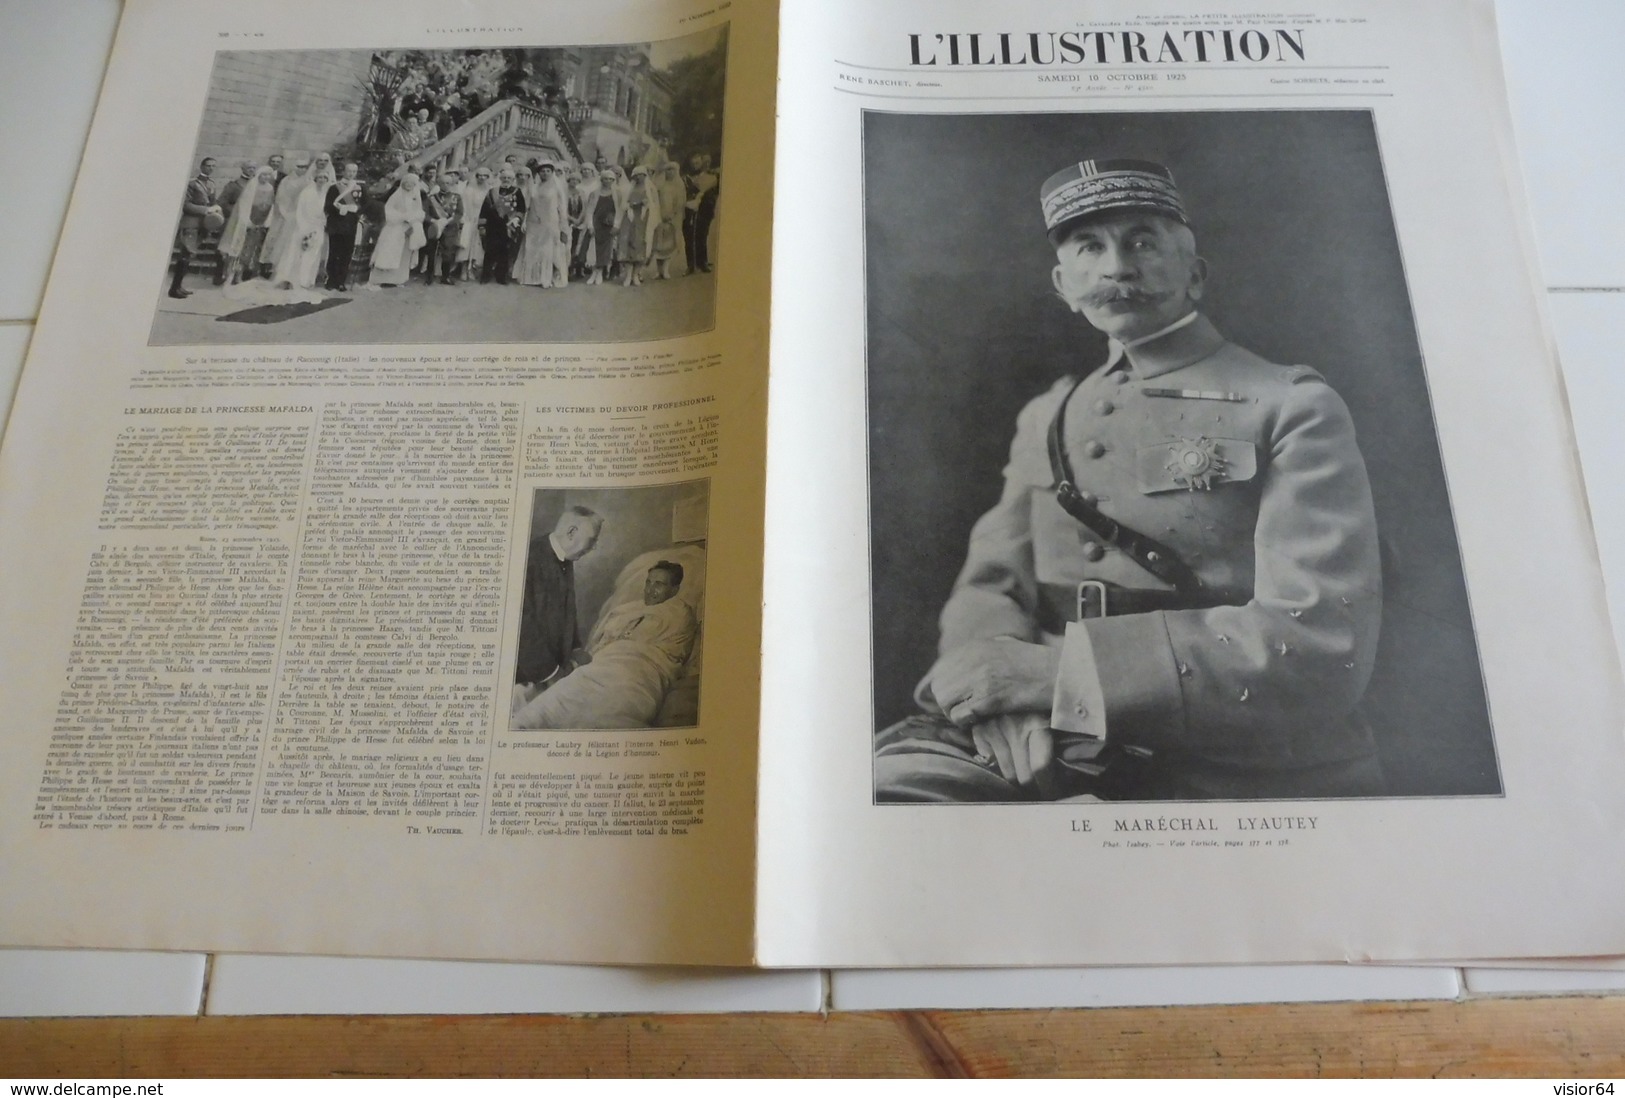 L'ILLUSTRATION 10 OCTOBRE 1925-MAROC VISIONS DE GUERRE-LEON BOURGEOIS-DELIVRANCE DE SOUEIDA-PORT DE CASSIS EN PROVENCE-A - L'Illustration